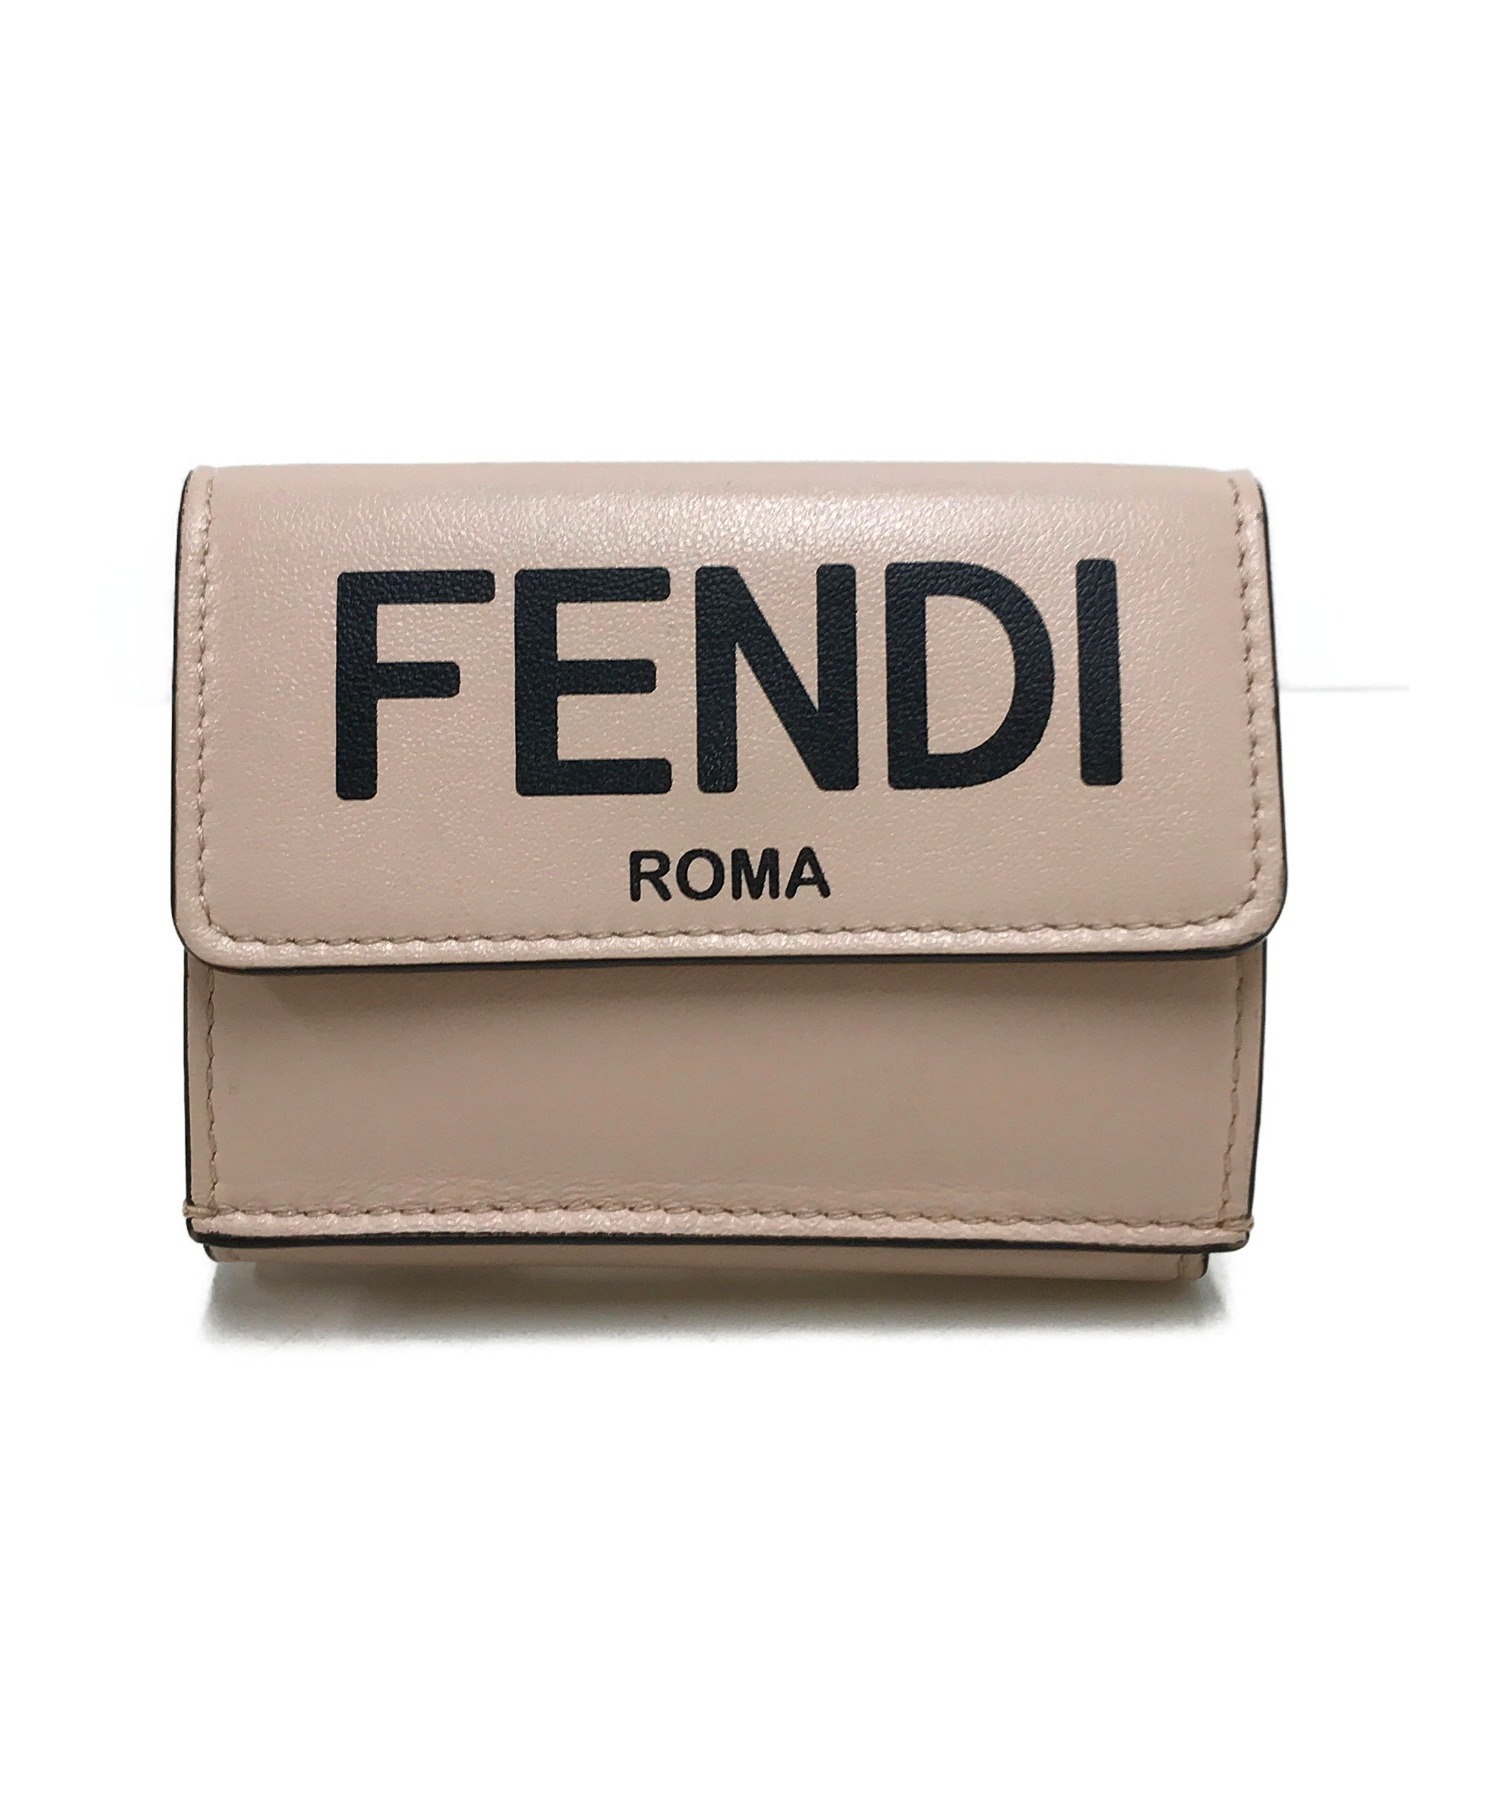 レディースファッション 財布、帽子、ファッション小物 FENDI ROMA (フェンディローマ) 2つ折り財布 ピンク